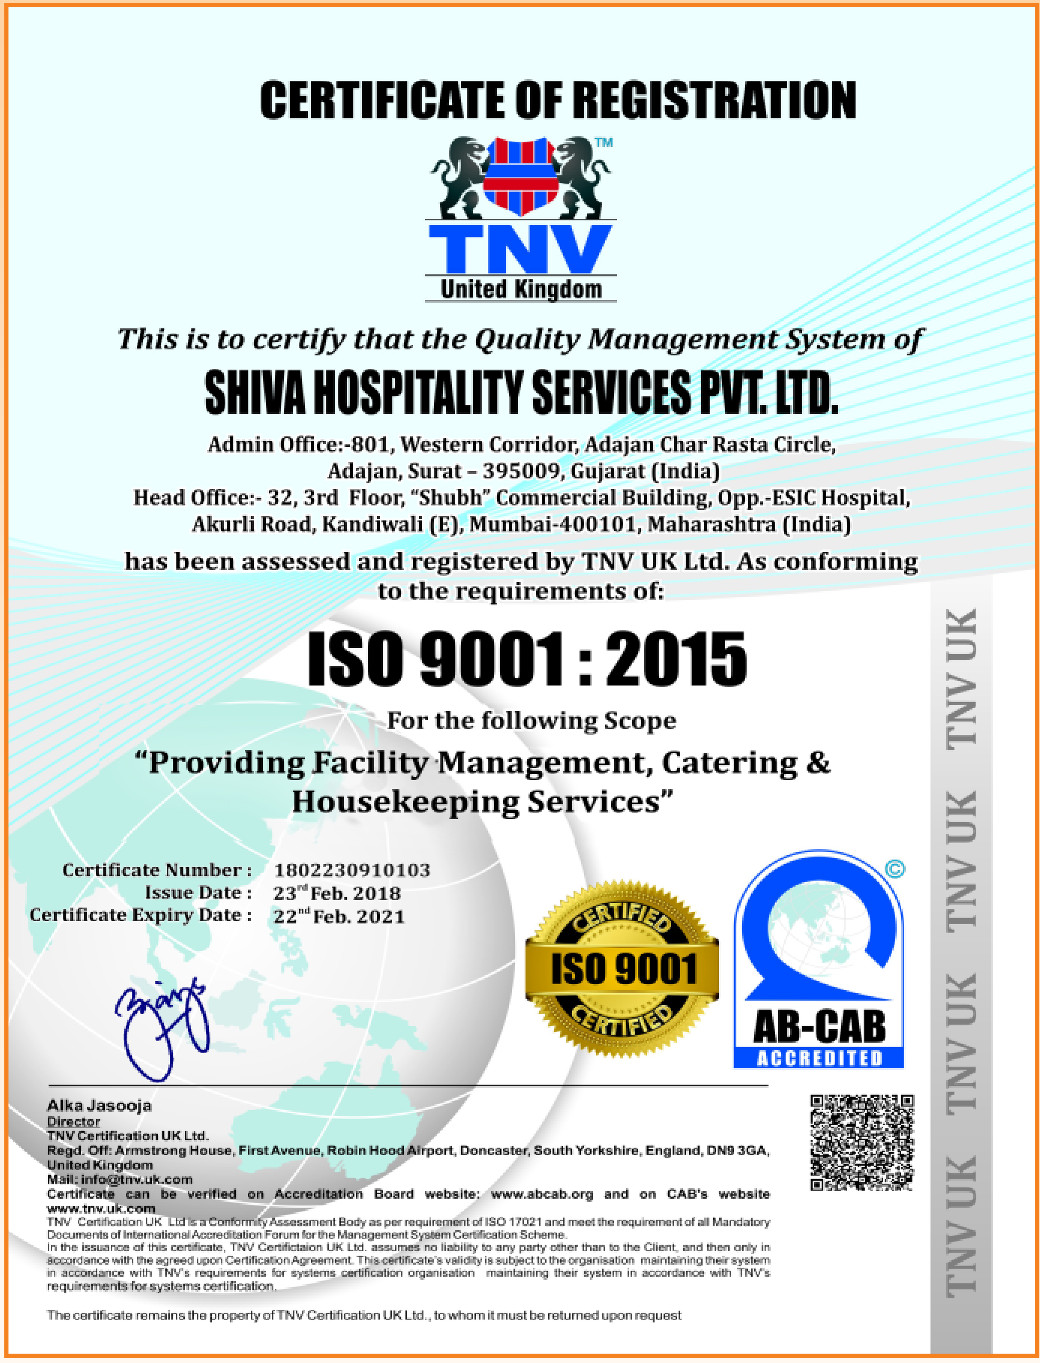  Shiva Hospitality Services - ISO 9001:2015